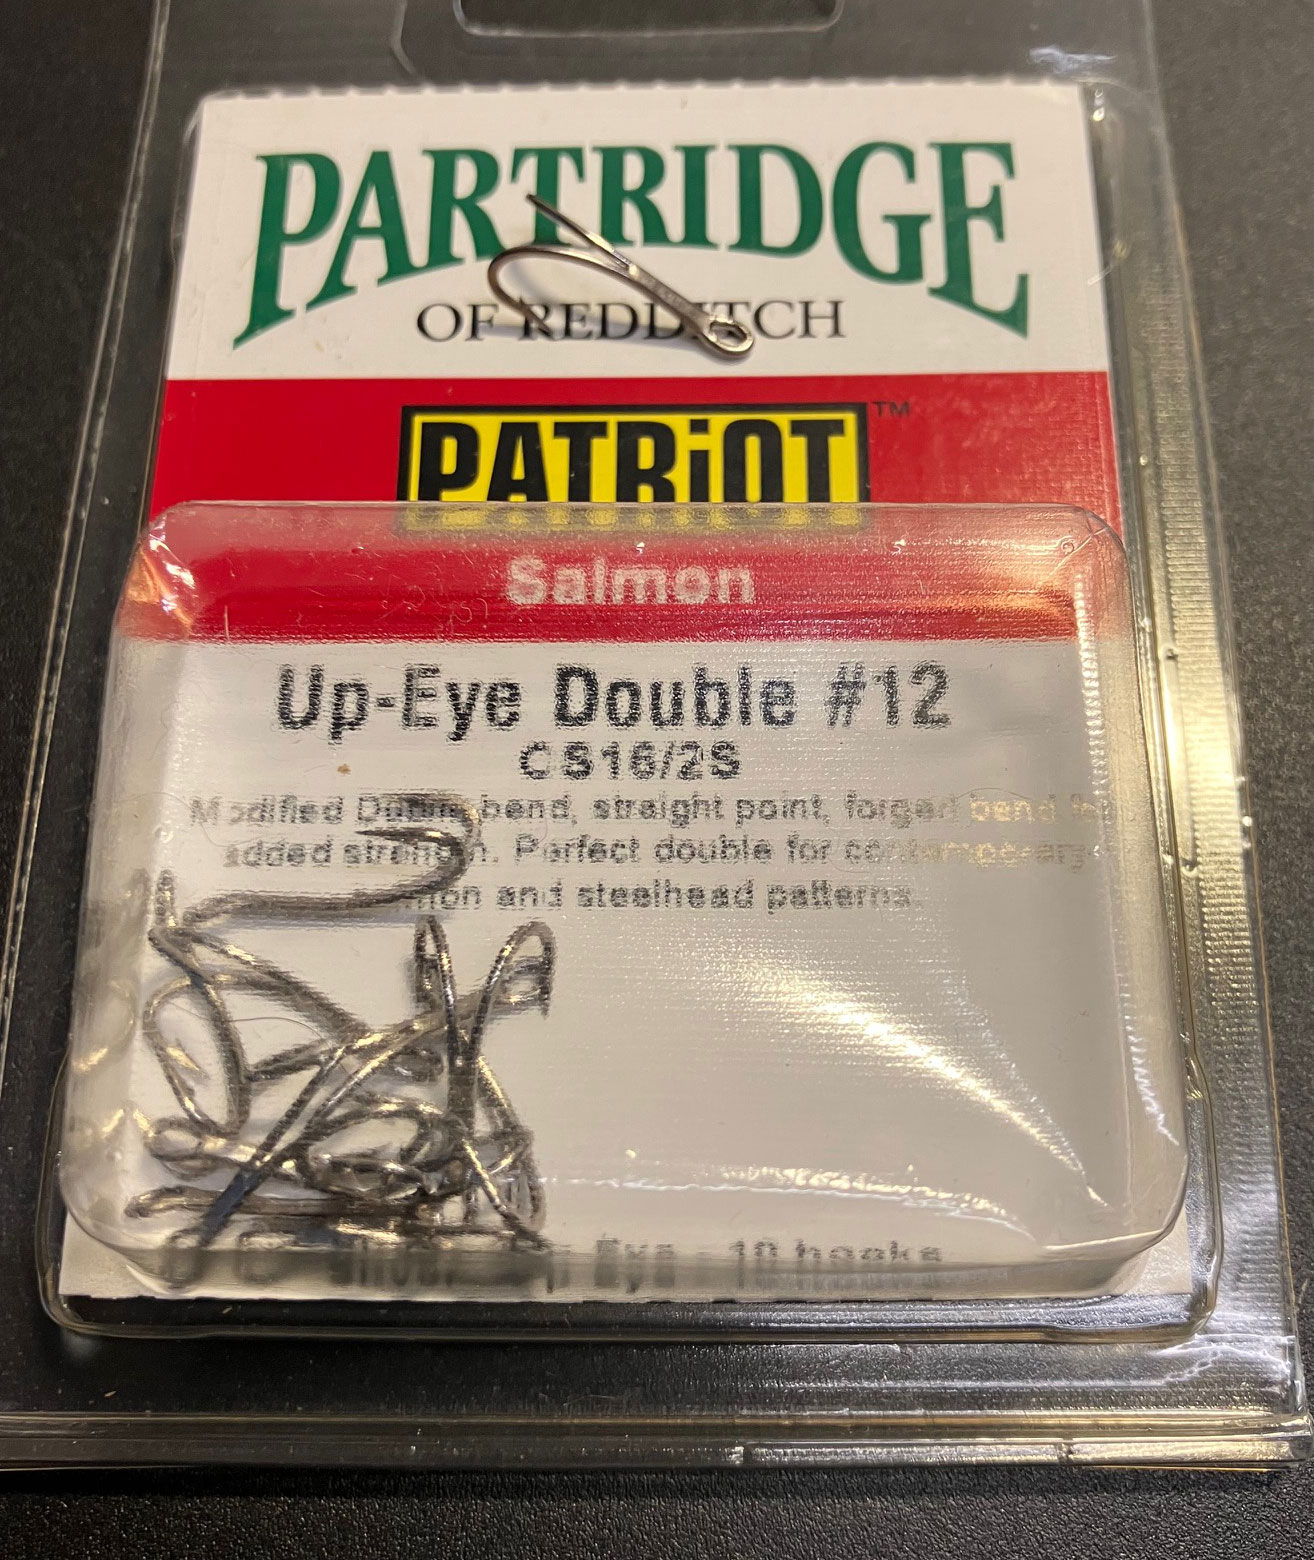 Partridge patriot #12